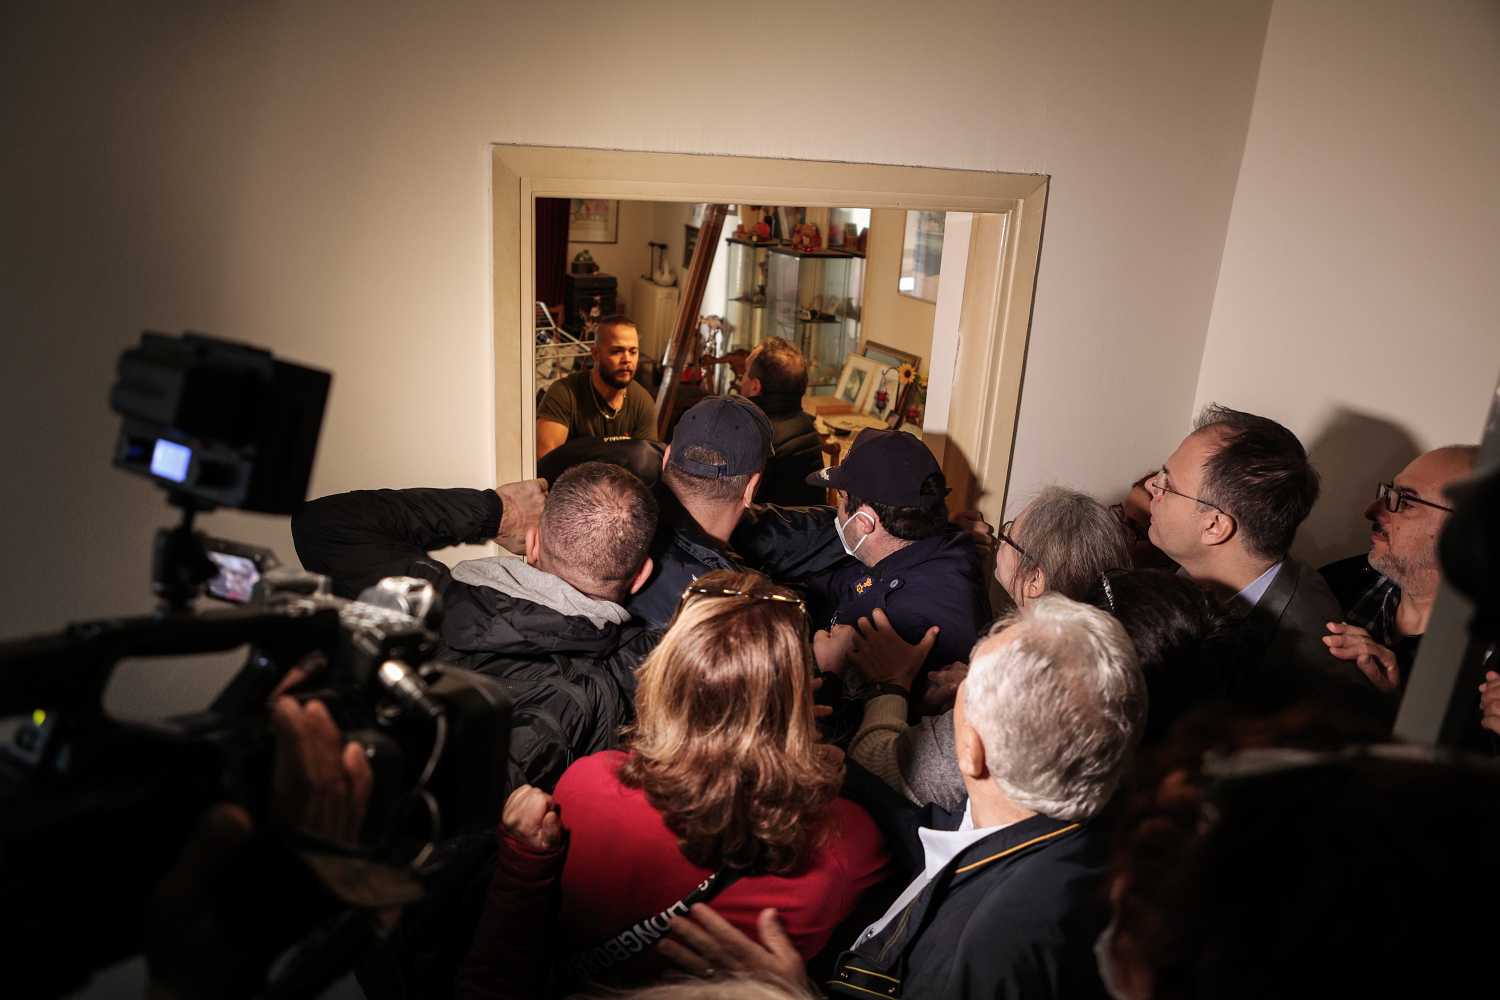 Αλληλέγγυοι, γείτονες & βουλευτές στο σπίτι της Ι. Κολοβού για να σταματήσουν την έξωση